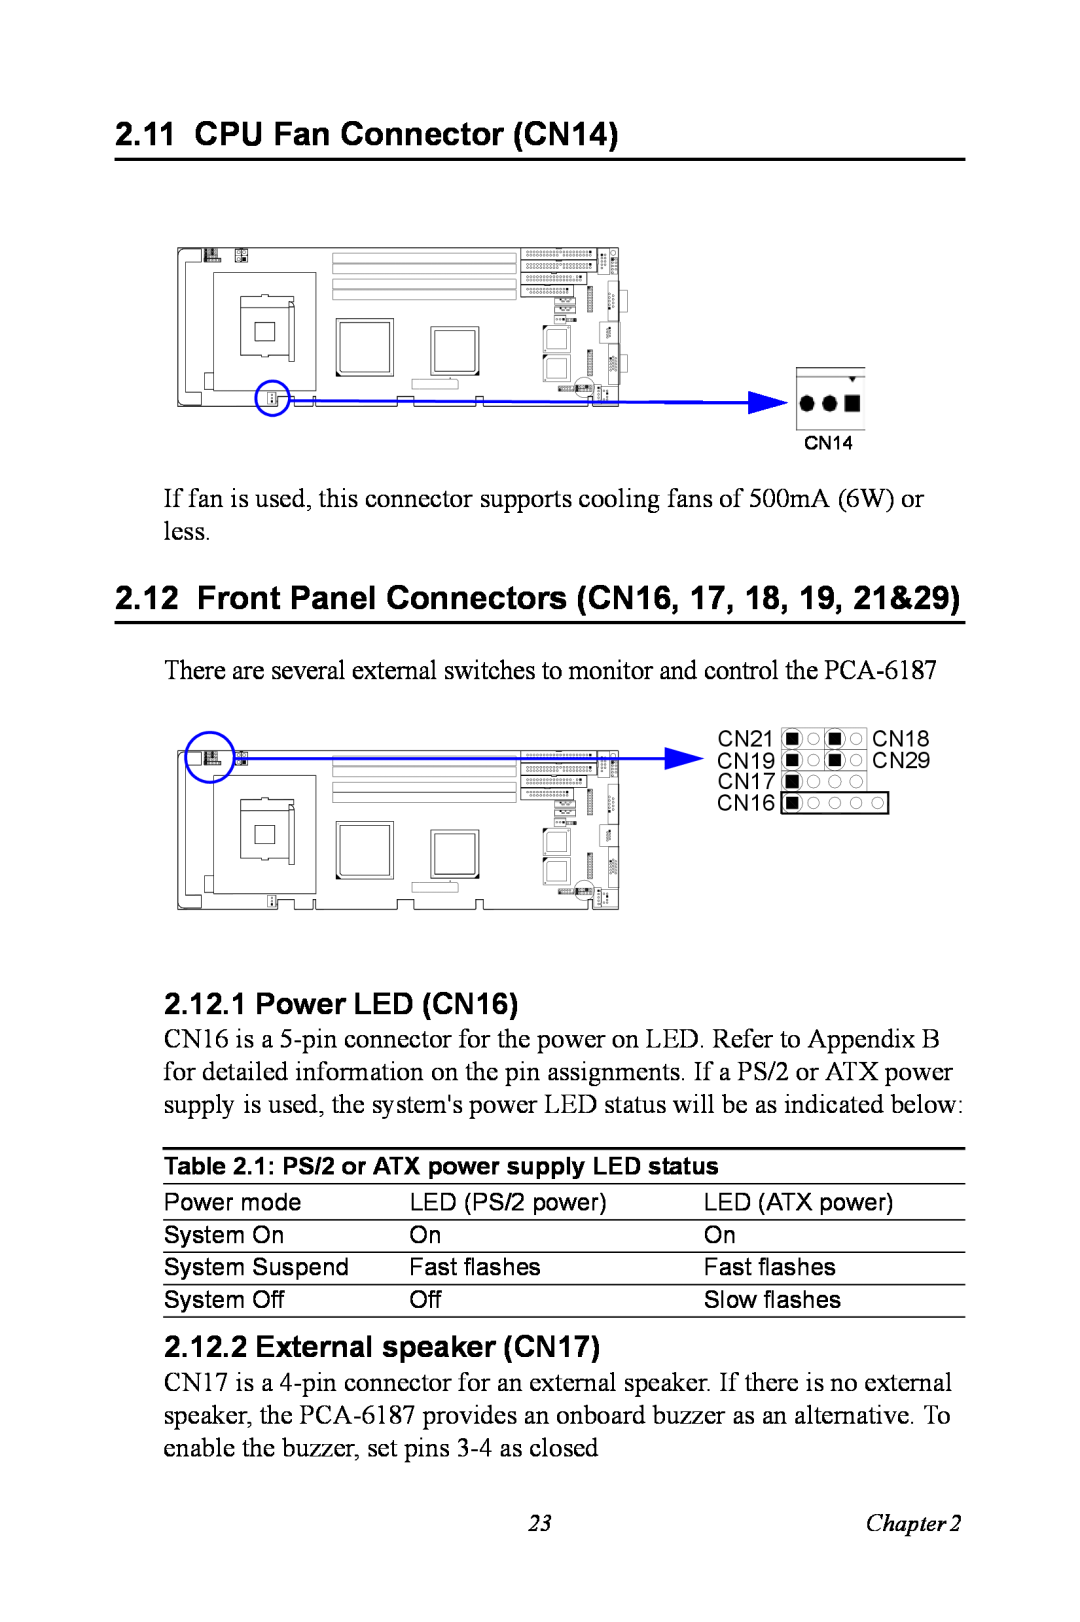 Advantech PCA-6187 user manual CPU Fan Connector CN14, Front Panel Connectors CN16, 17, 18, 19, 21&29, Power LED CN16 